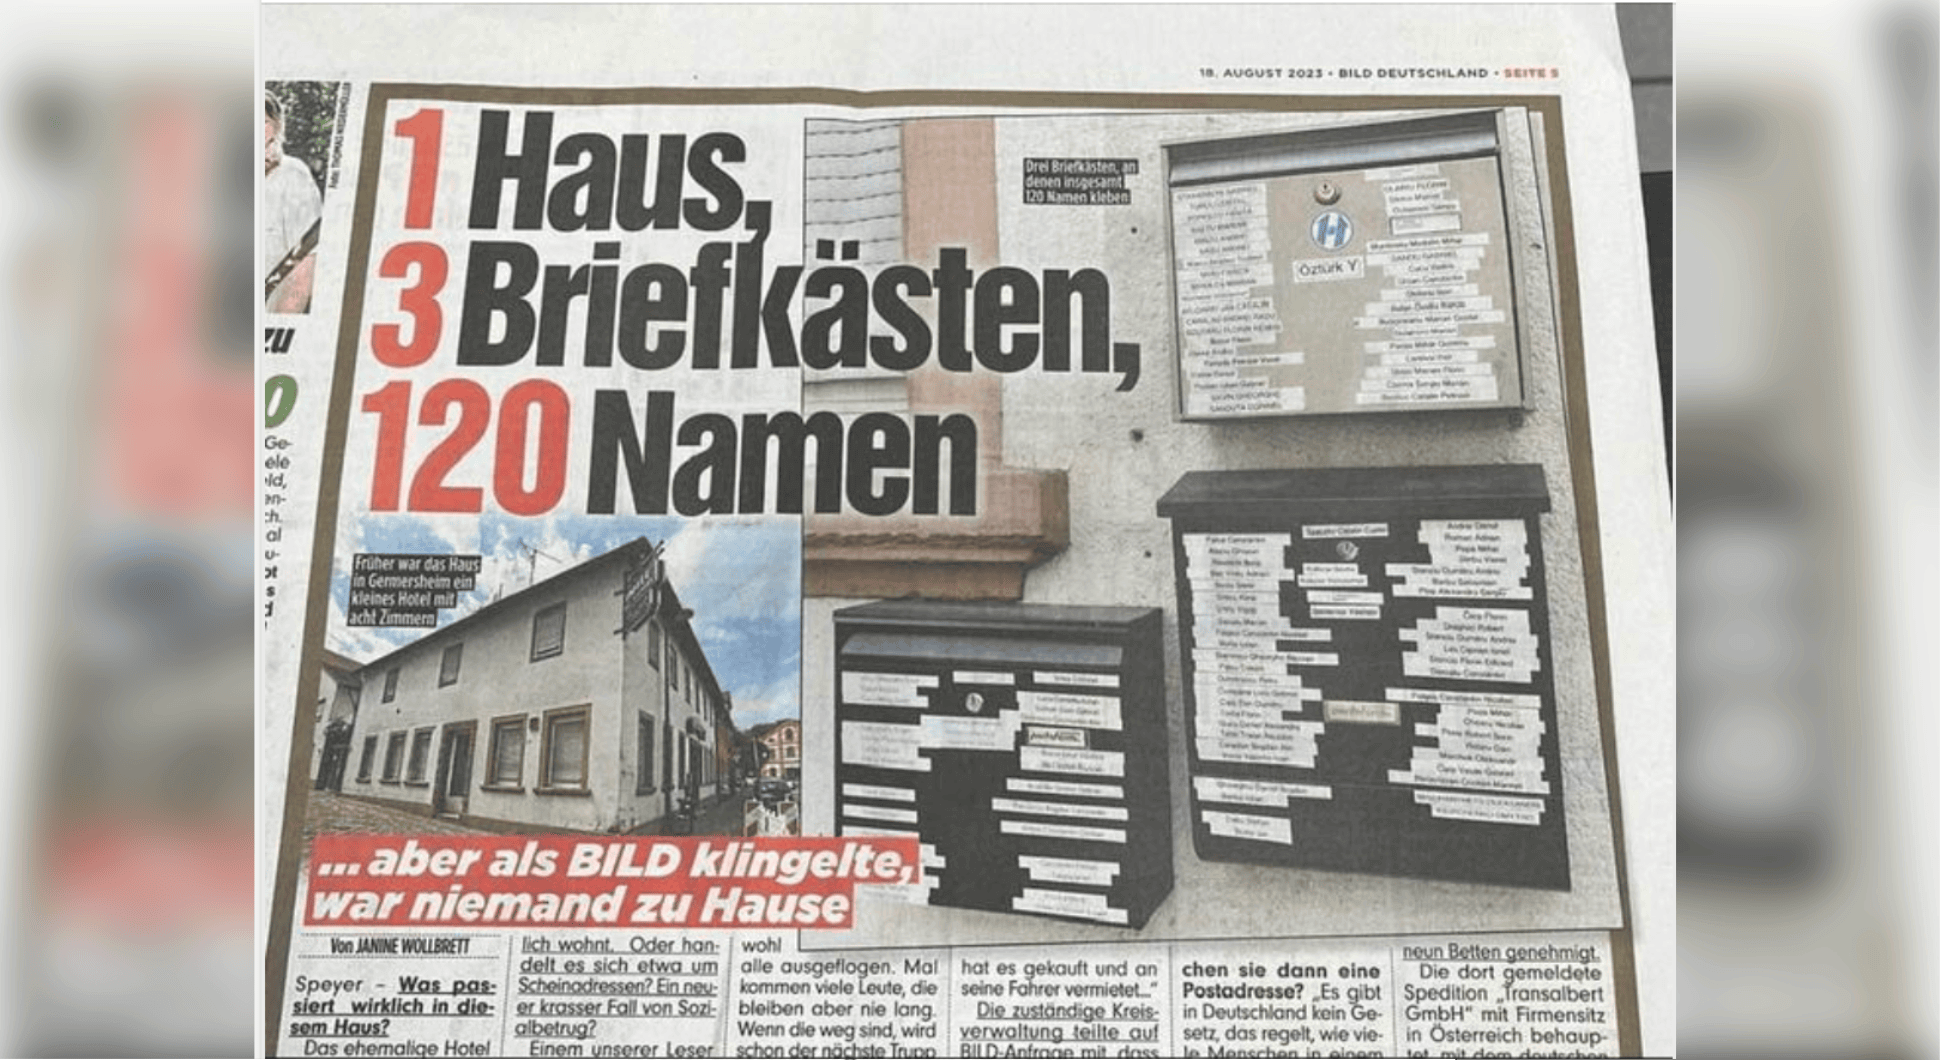 Ein Screenshot einer Zeitungsseite der Bildzeitung. Darauf sind mehrere Briefkästen mit vielen Namensschildern zu sehen, die Schlagzeile lautet: 1 Haus, 3 Briefkaesten, 120 Namen.